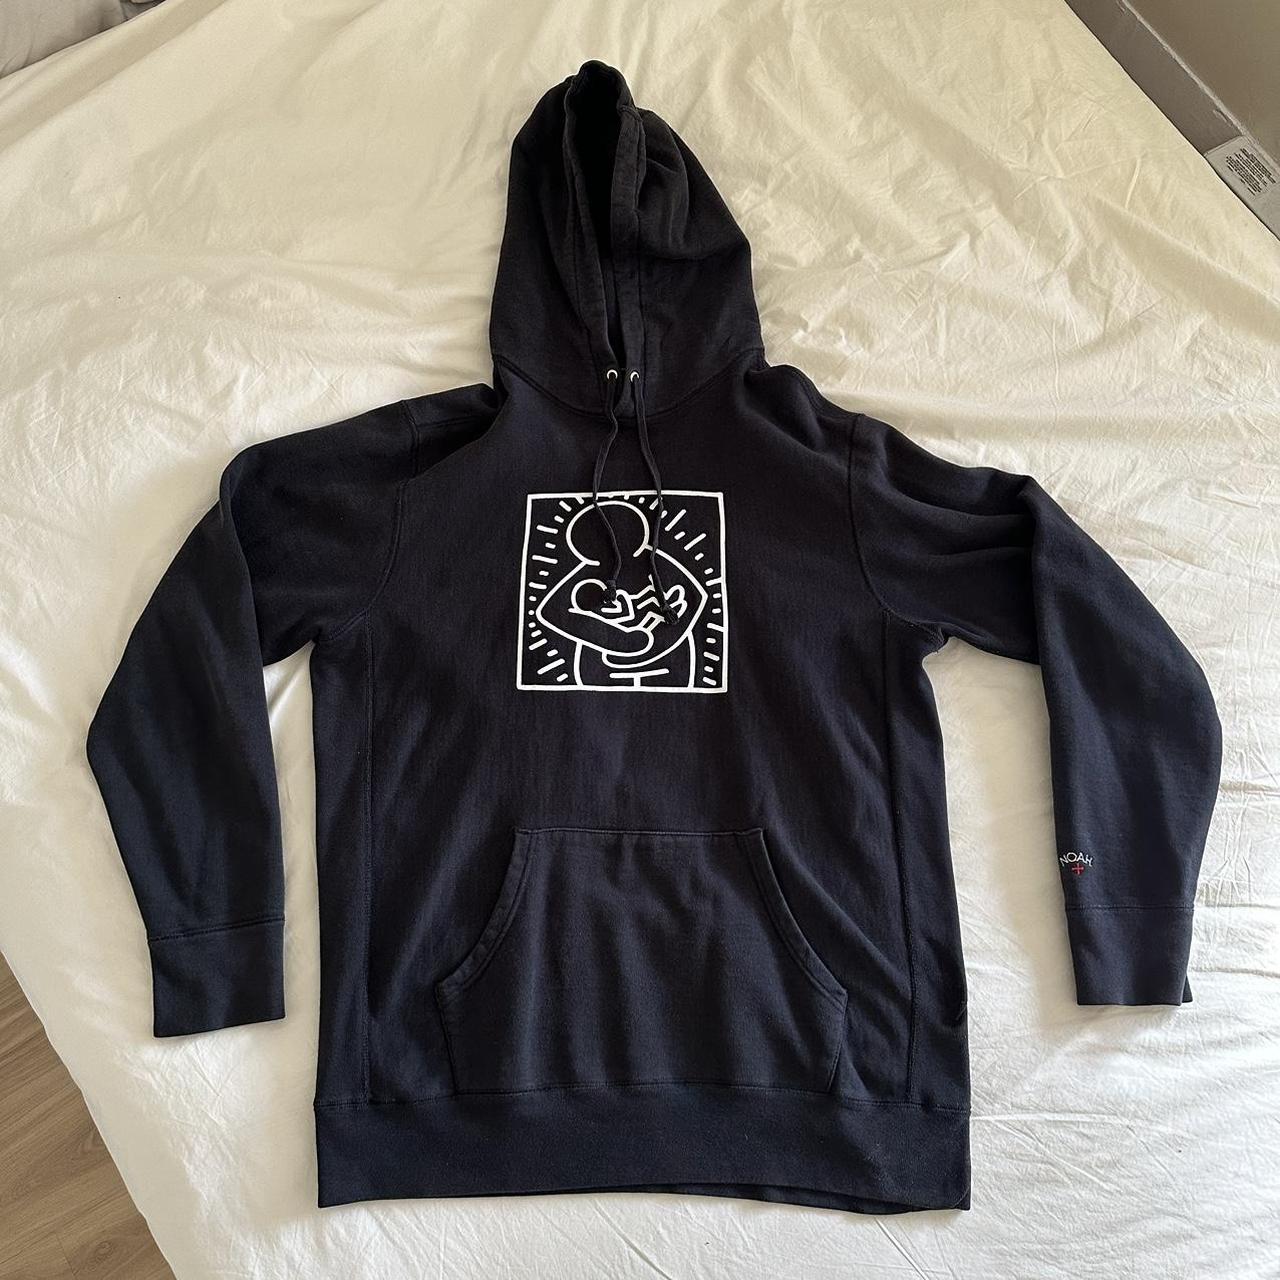 Noah Keith Haring sweatshirt size XL in great shape.... - Depop